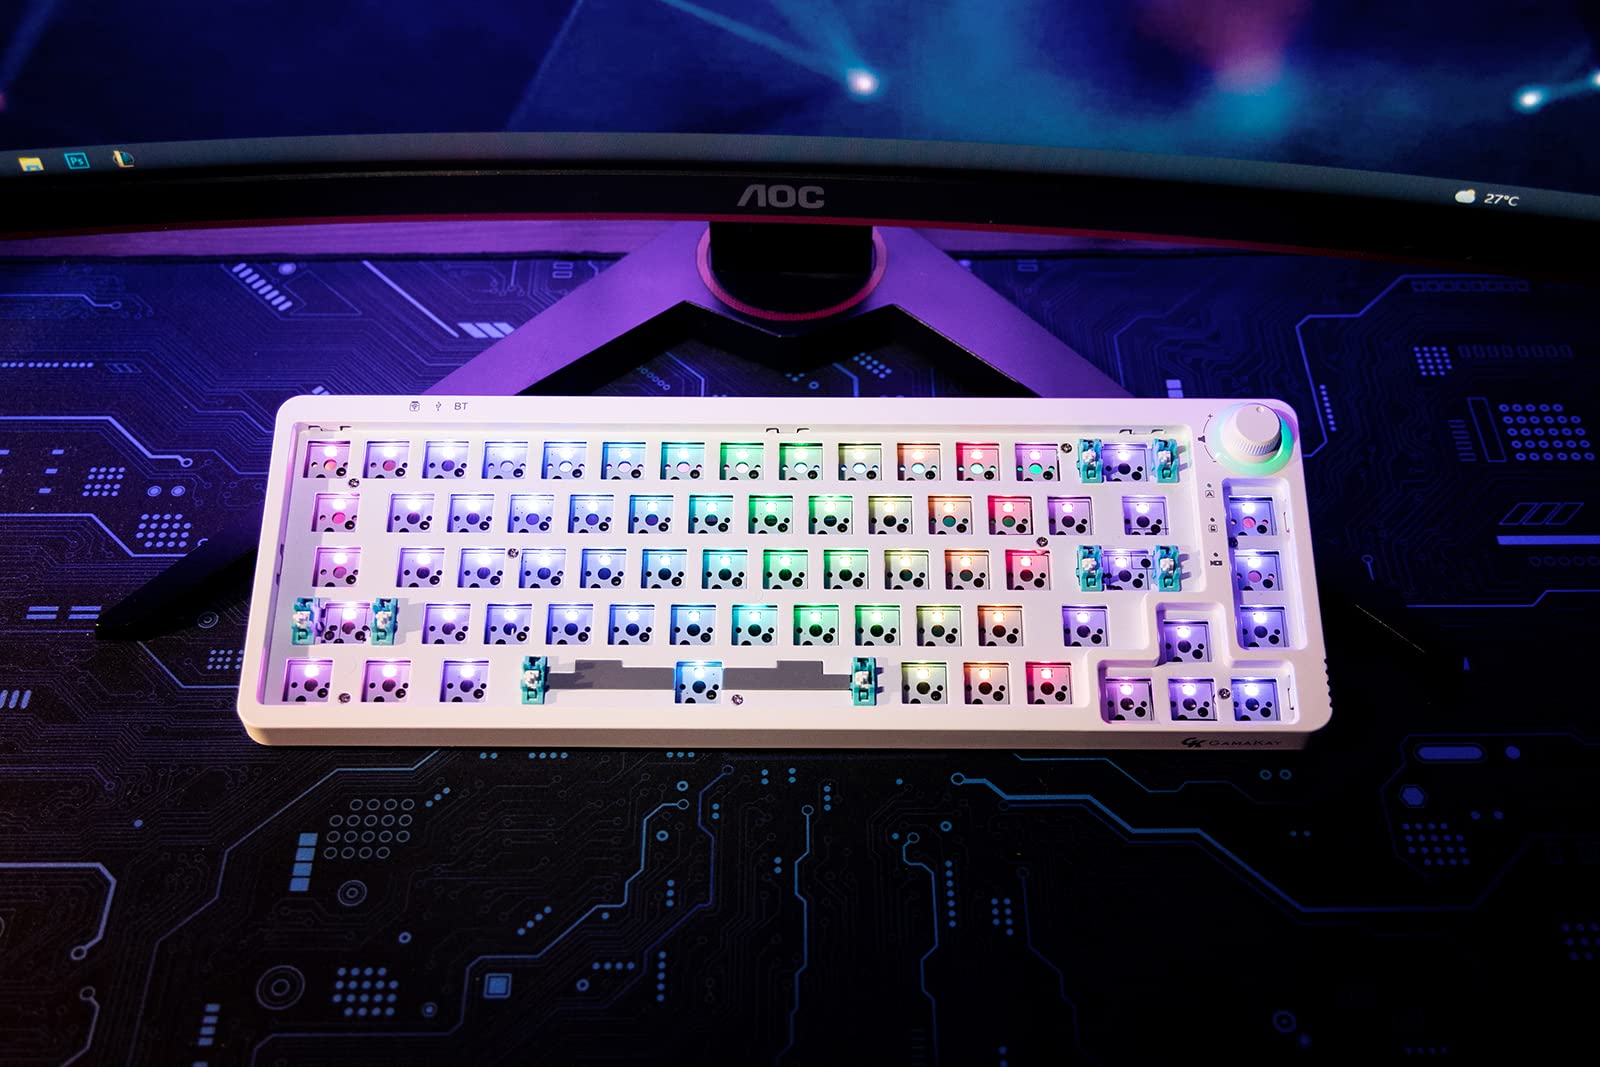 Bộ phím cơ máy tính GK GAMAKAY LK67 65% RGB Modular DIY, 67 phím - Với thiết kế modul hóa tiên tiến, bộ phím cơ máy tính GK GAMAKAY LK67 65% RGB Modular DIY, 67 phím luôn đáp ứng tất cả các nhu cầu của bạn. Với chất lượng bền bỉ và sự phối hợp tinh tế giữa các màu sắc, bộ phím này sẽ là lựa chọn hoàn hảo cho các game thủ hay người sáng tạo đang tìm kiếm sự hoàn hảo về cảm giác gõ phím.